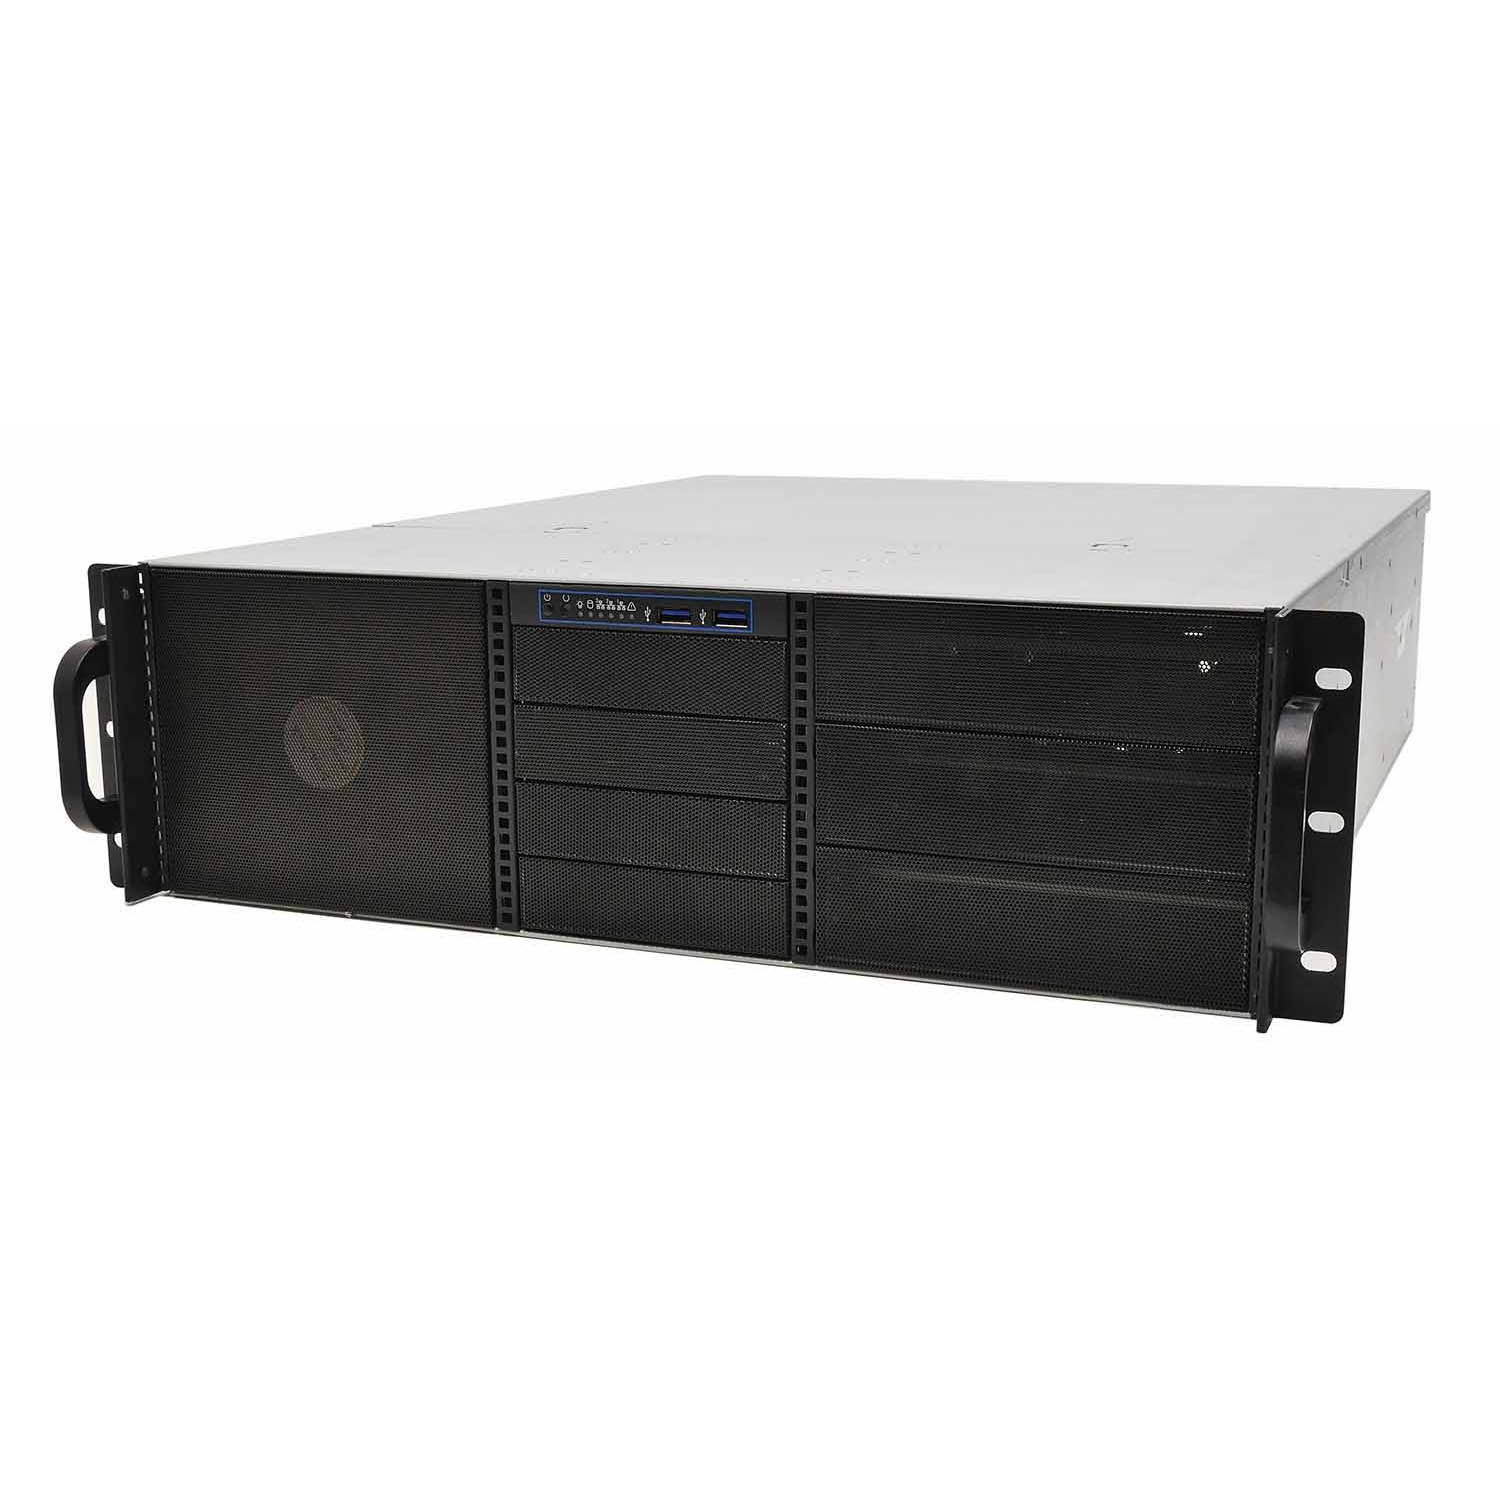 Серверный корпус 3U NR-N3514 2х600Вт (EATX12x13, 6x5.25ext (10x3.5int), 4x3.5ext, 550мм) черный, NegoRack